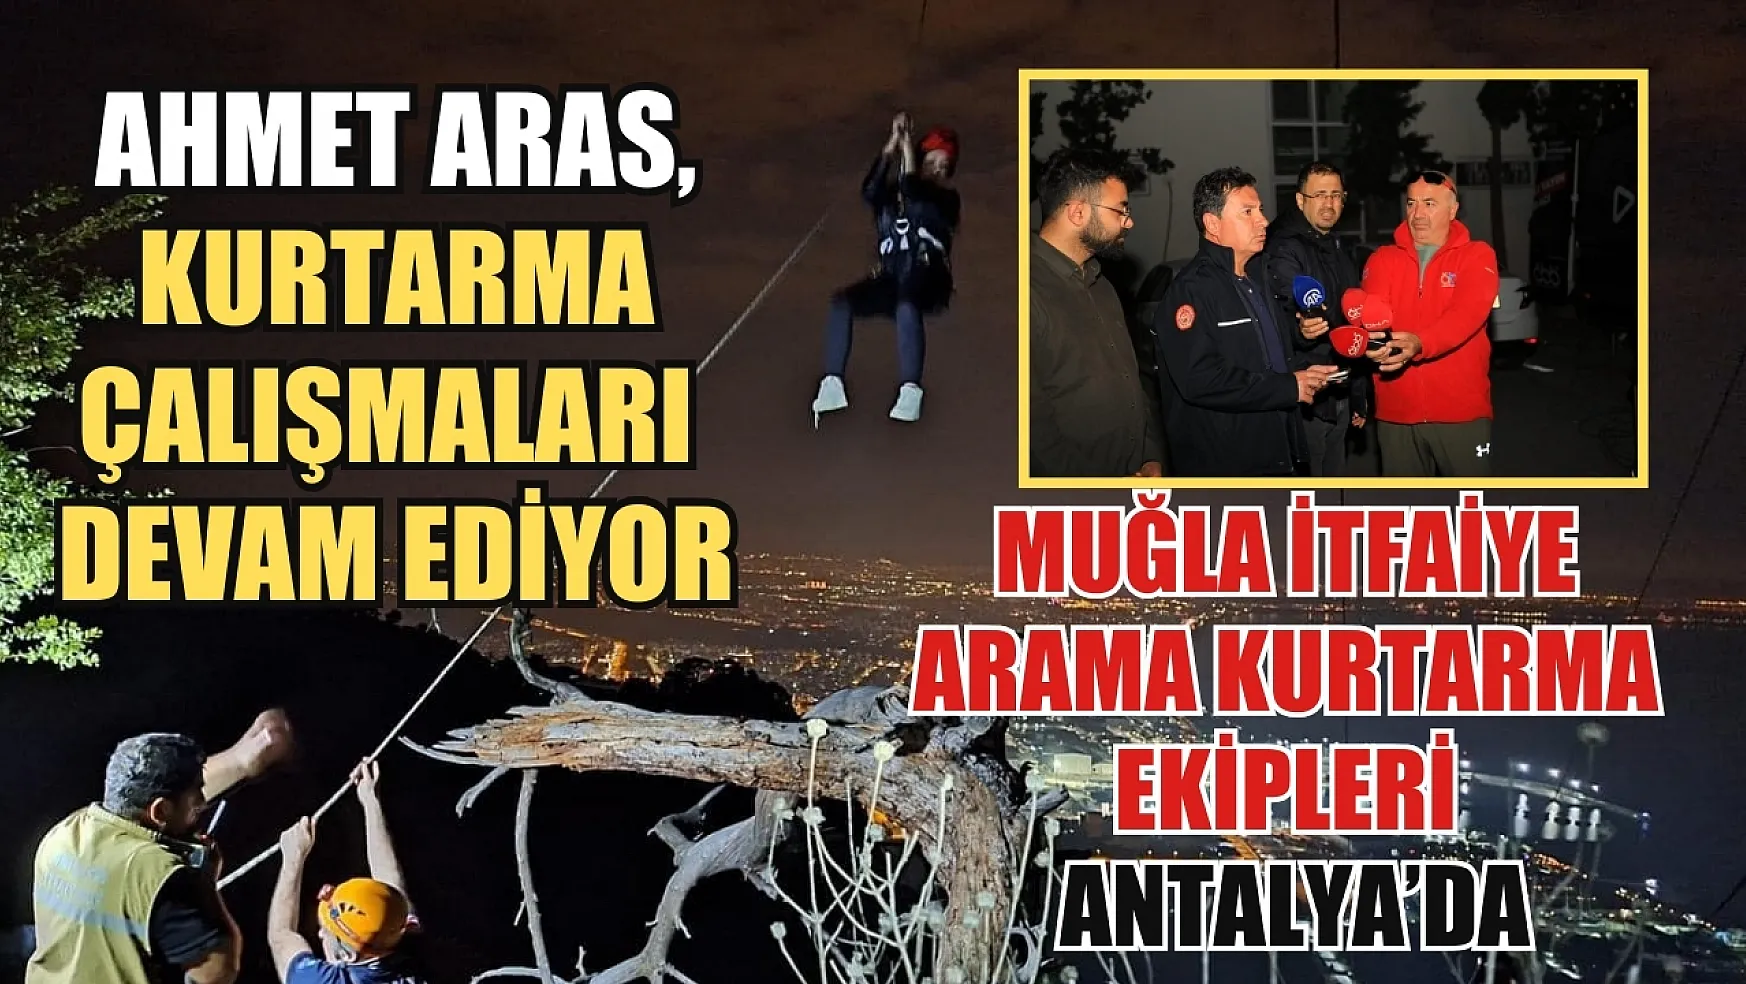 Muğla itfaiye arama kurtarma ekipleri Antalya'da Ahmet Aras: Kurtarma çalışmaları devam ediyor